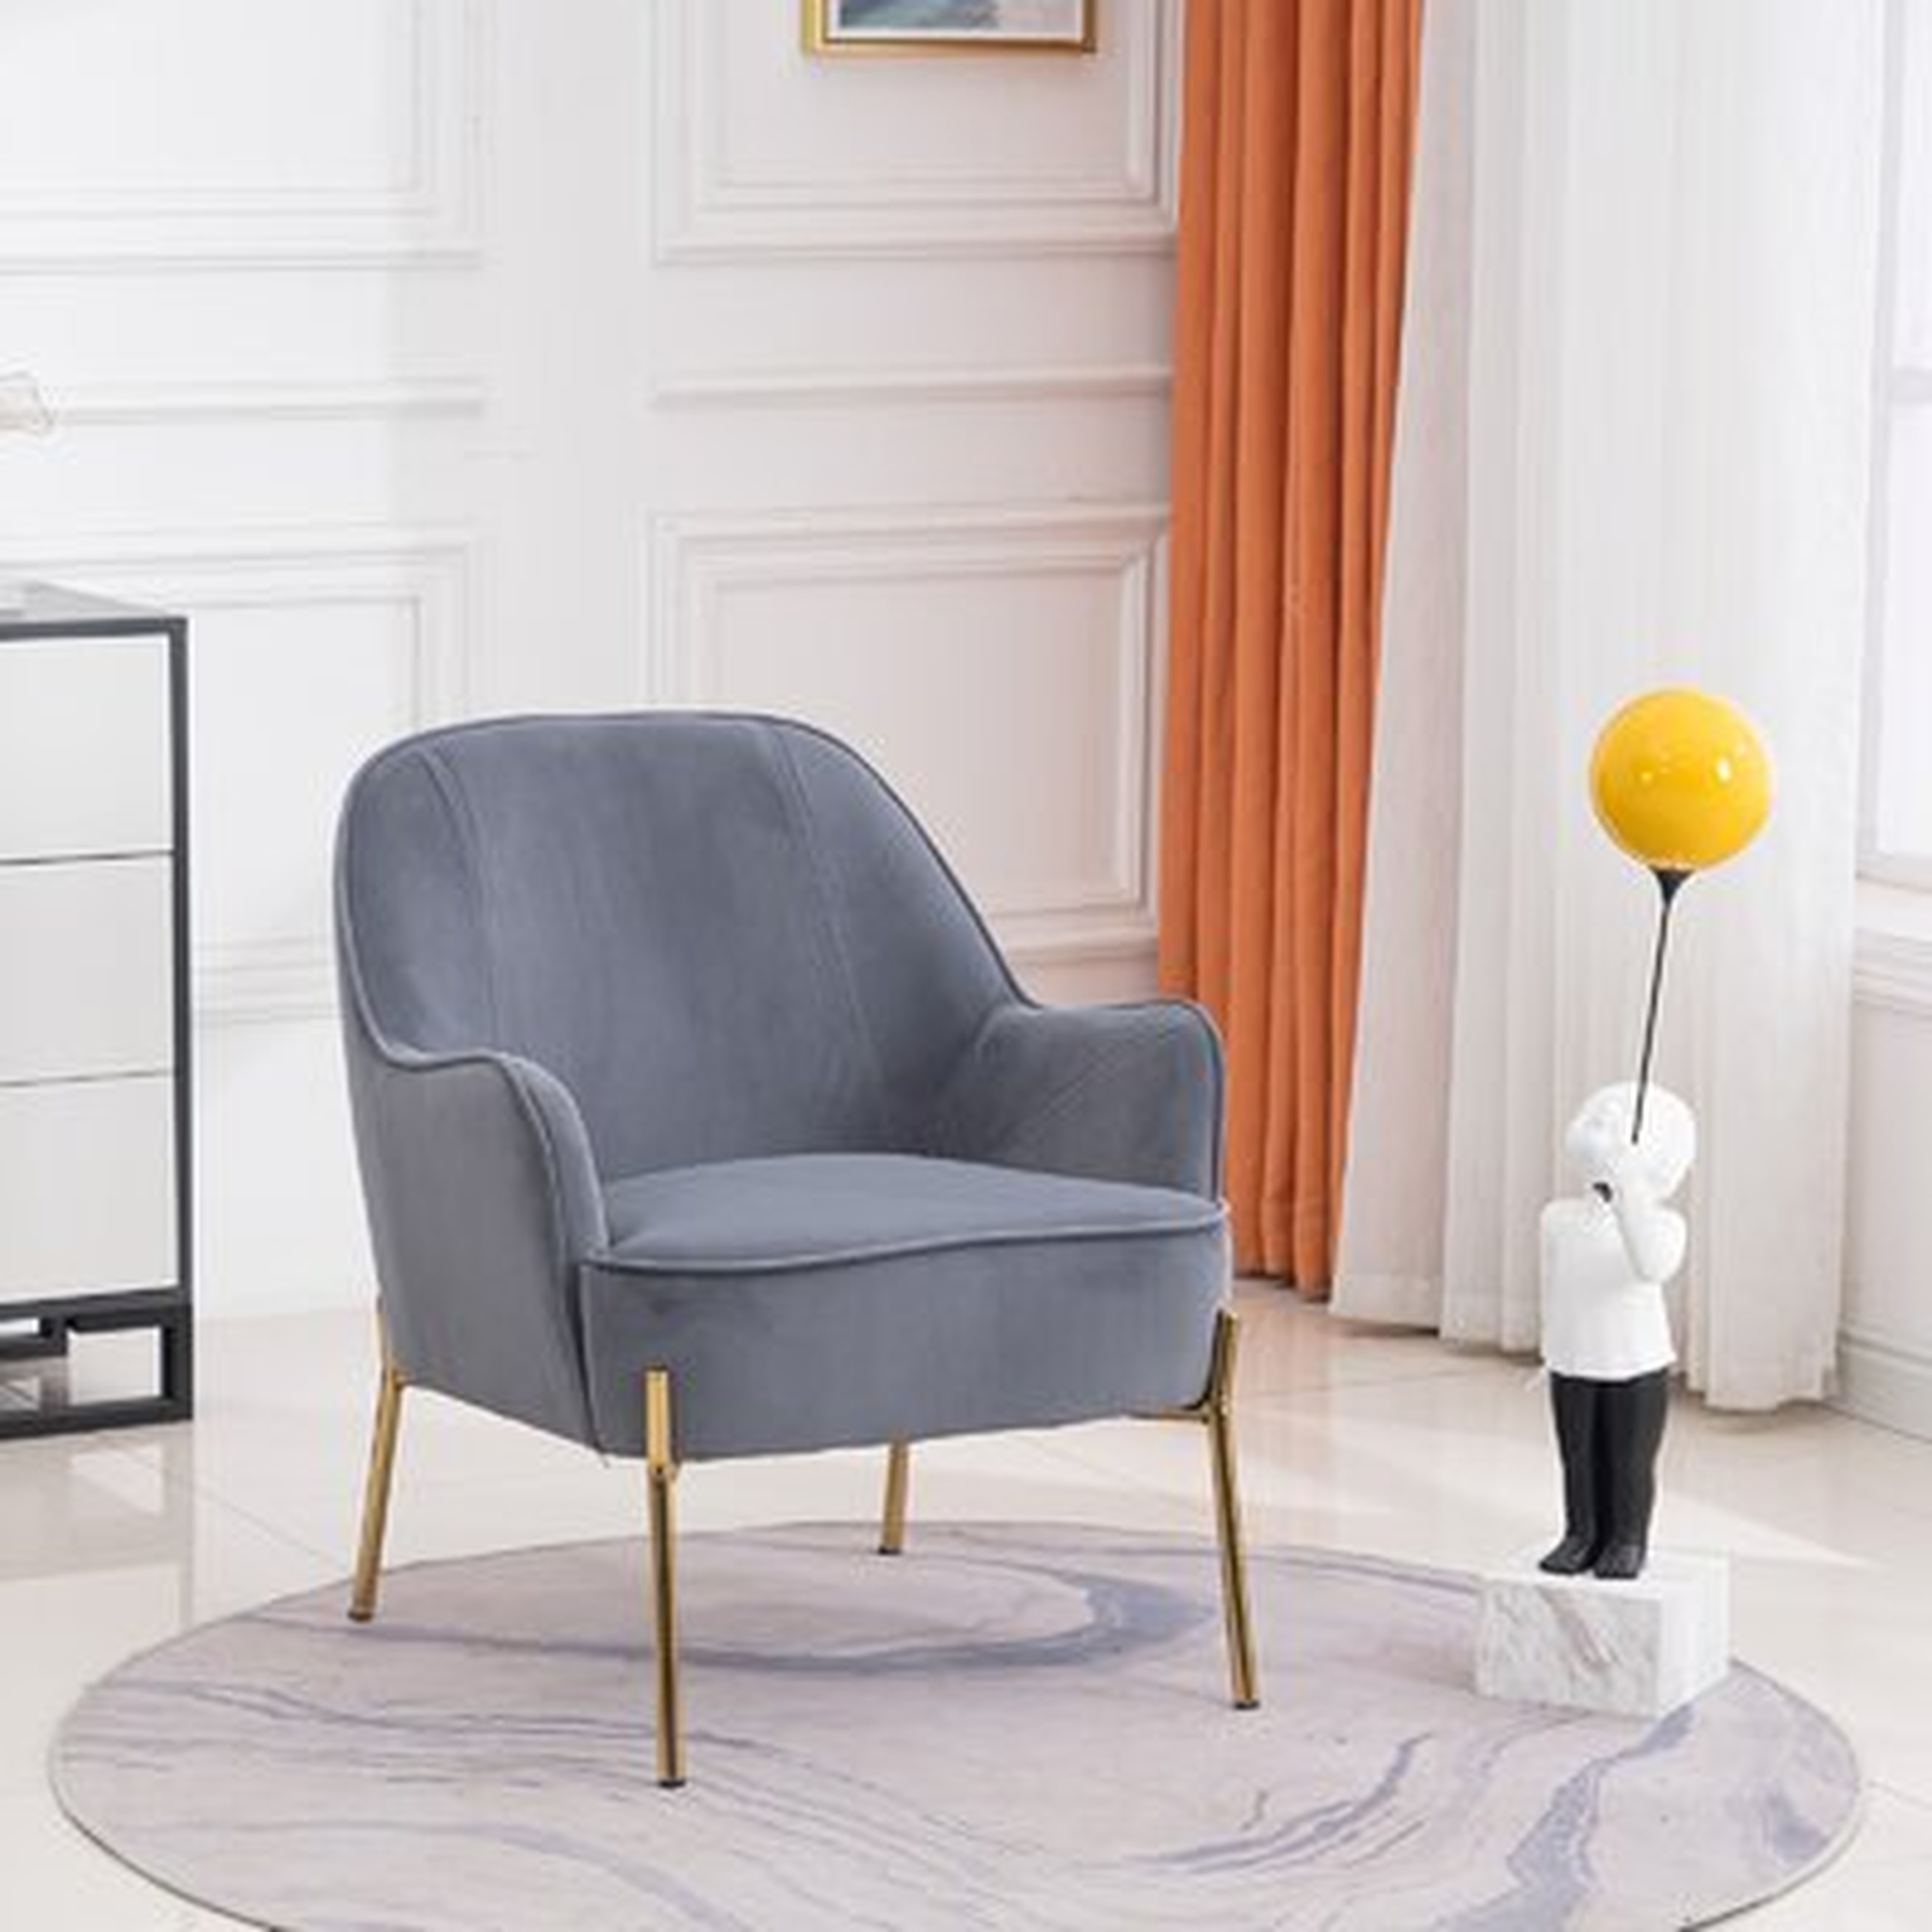 26" Modern Living Room Chair With Gold Soft Velvet Material - Wayfair